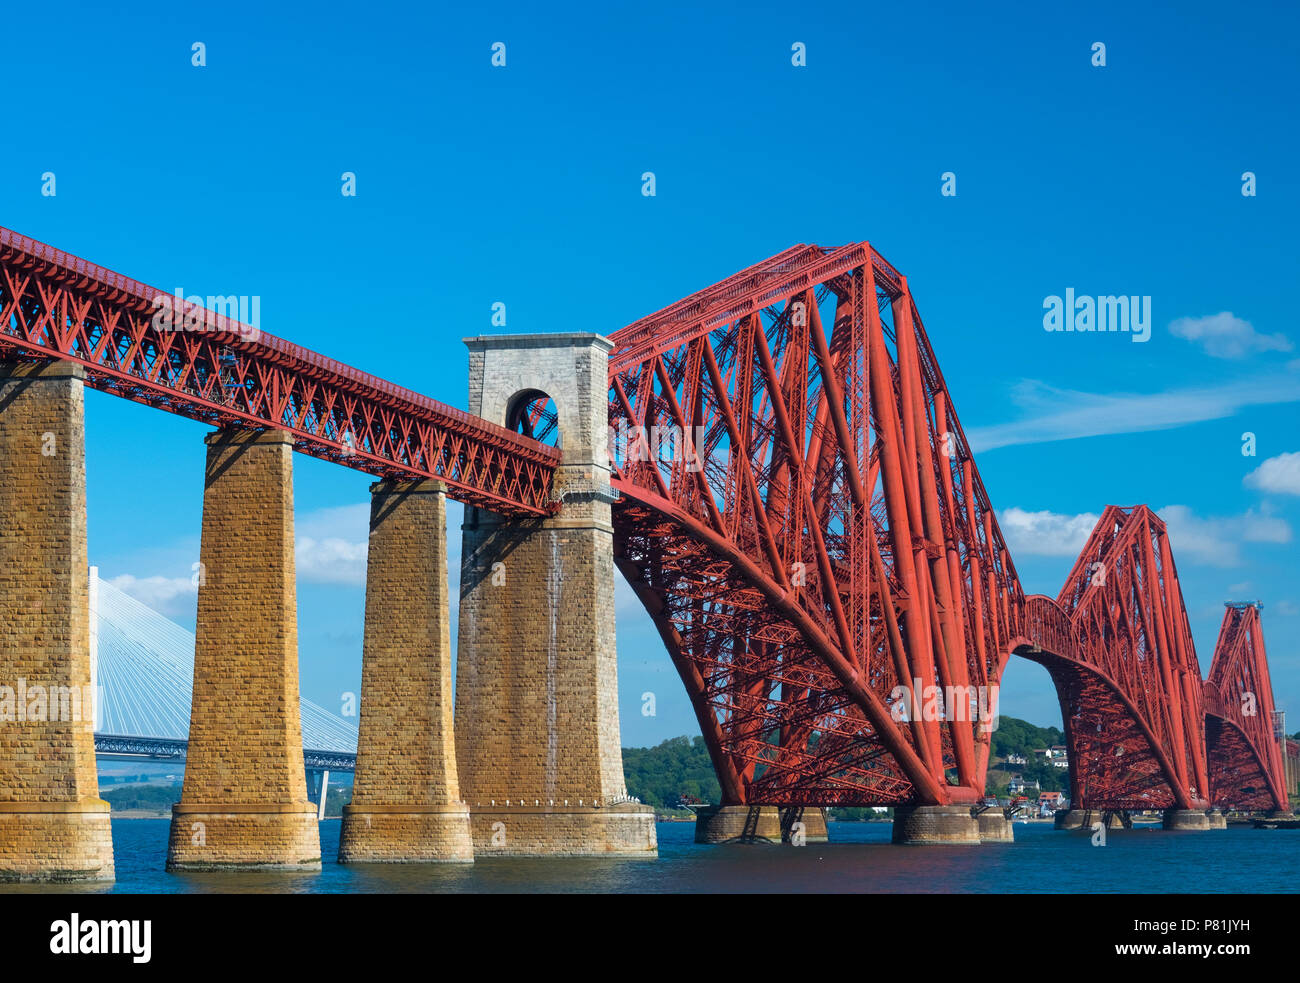 L'emblématique Forth Bridge s'étend sur le Firth of Forth, reliant Queensferry et North Queensferry, été 2018. Banque D'Images